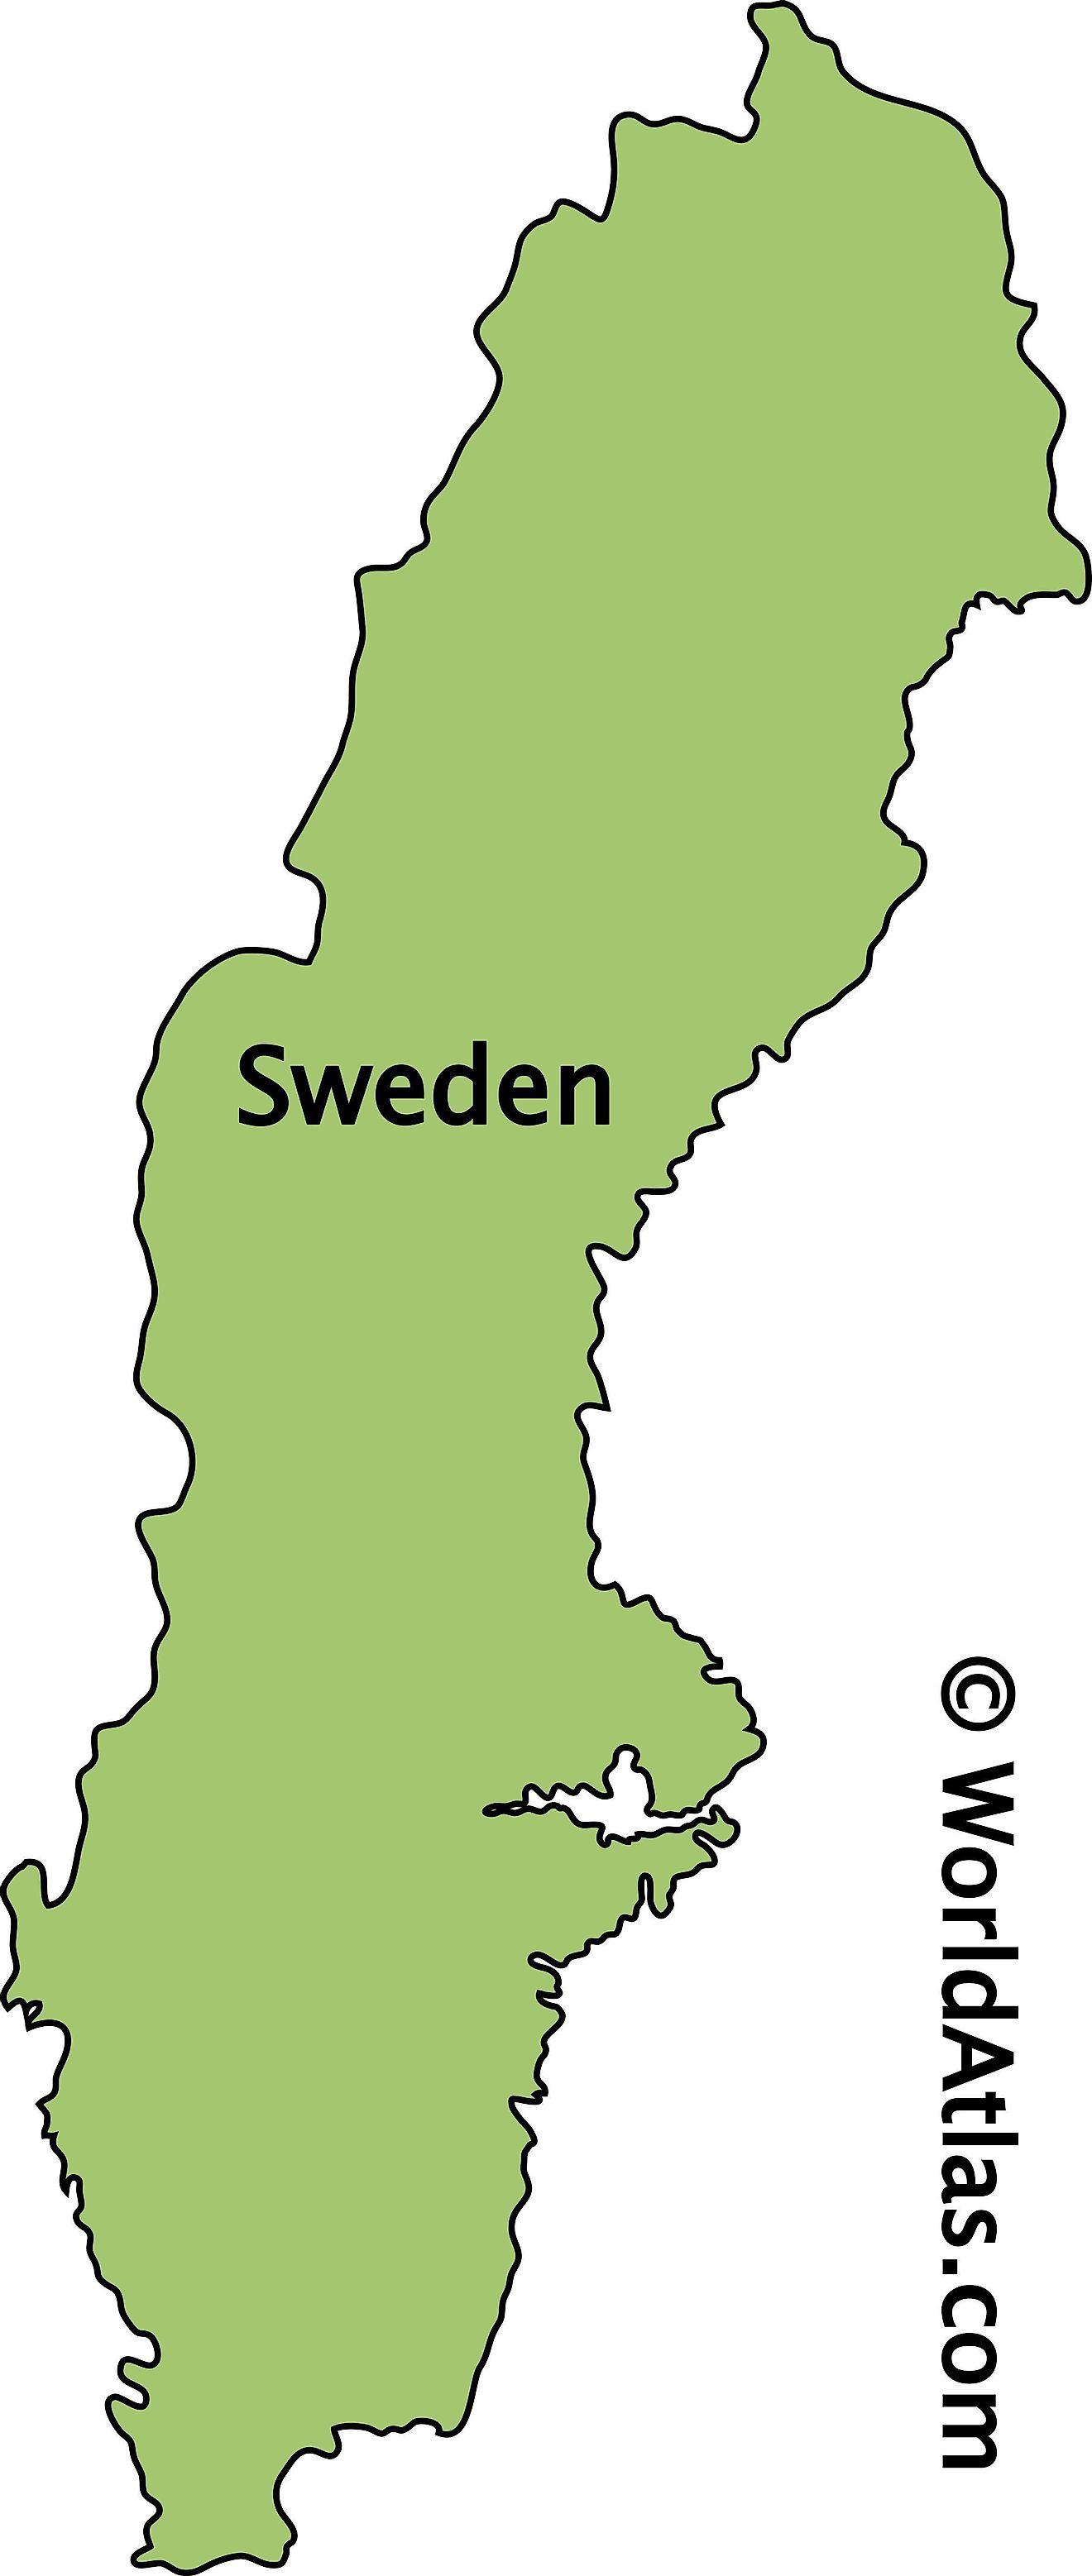 Mapa de contorno de Suecia